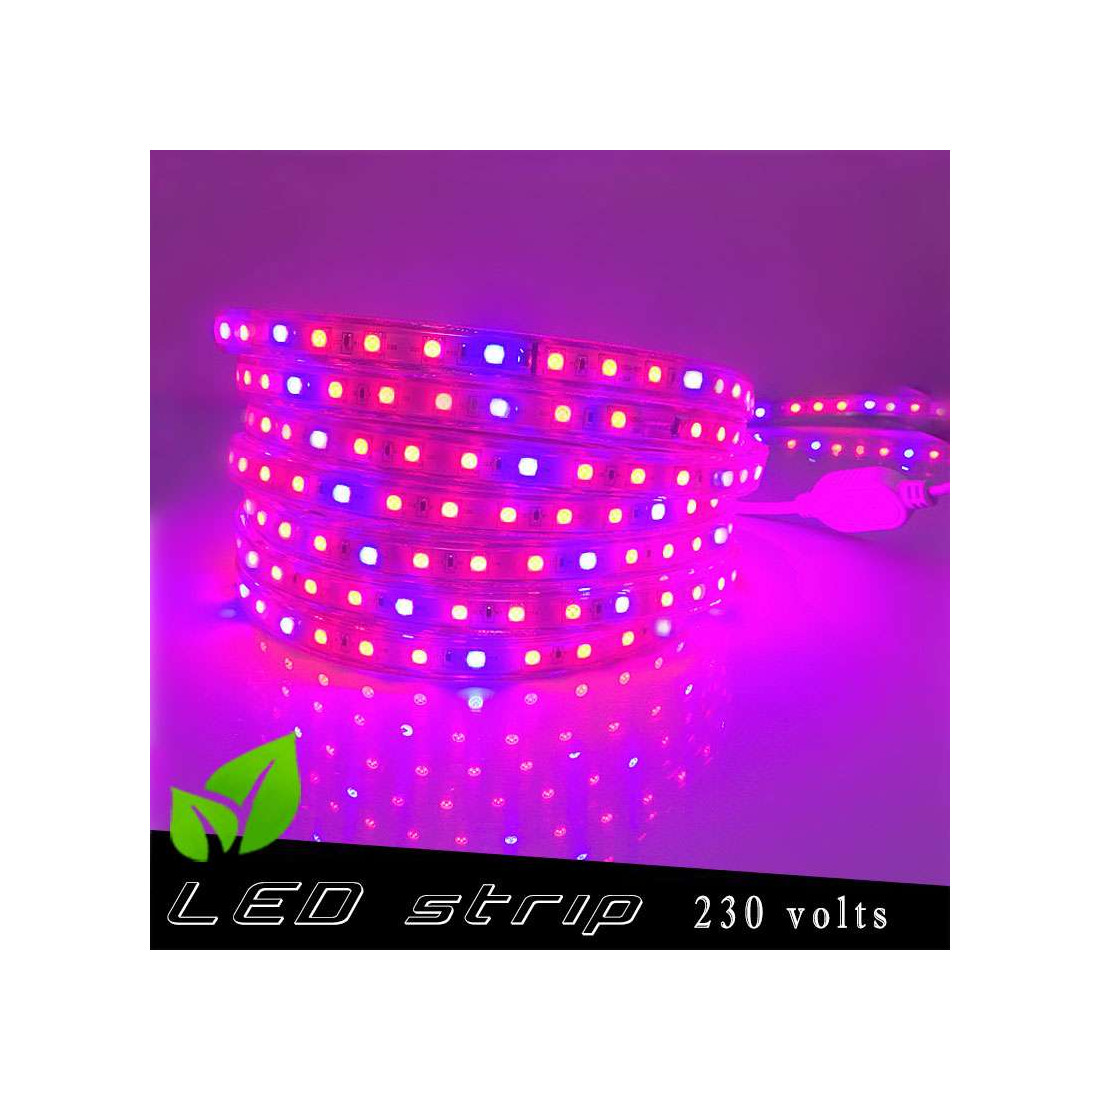 Strip LED Horticole 230 volts - LED rouge et bleue ratio 5 / 1 - vendu au  mètre linéaire